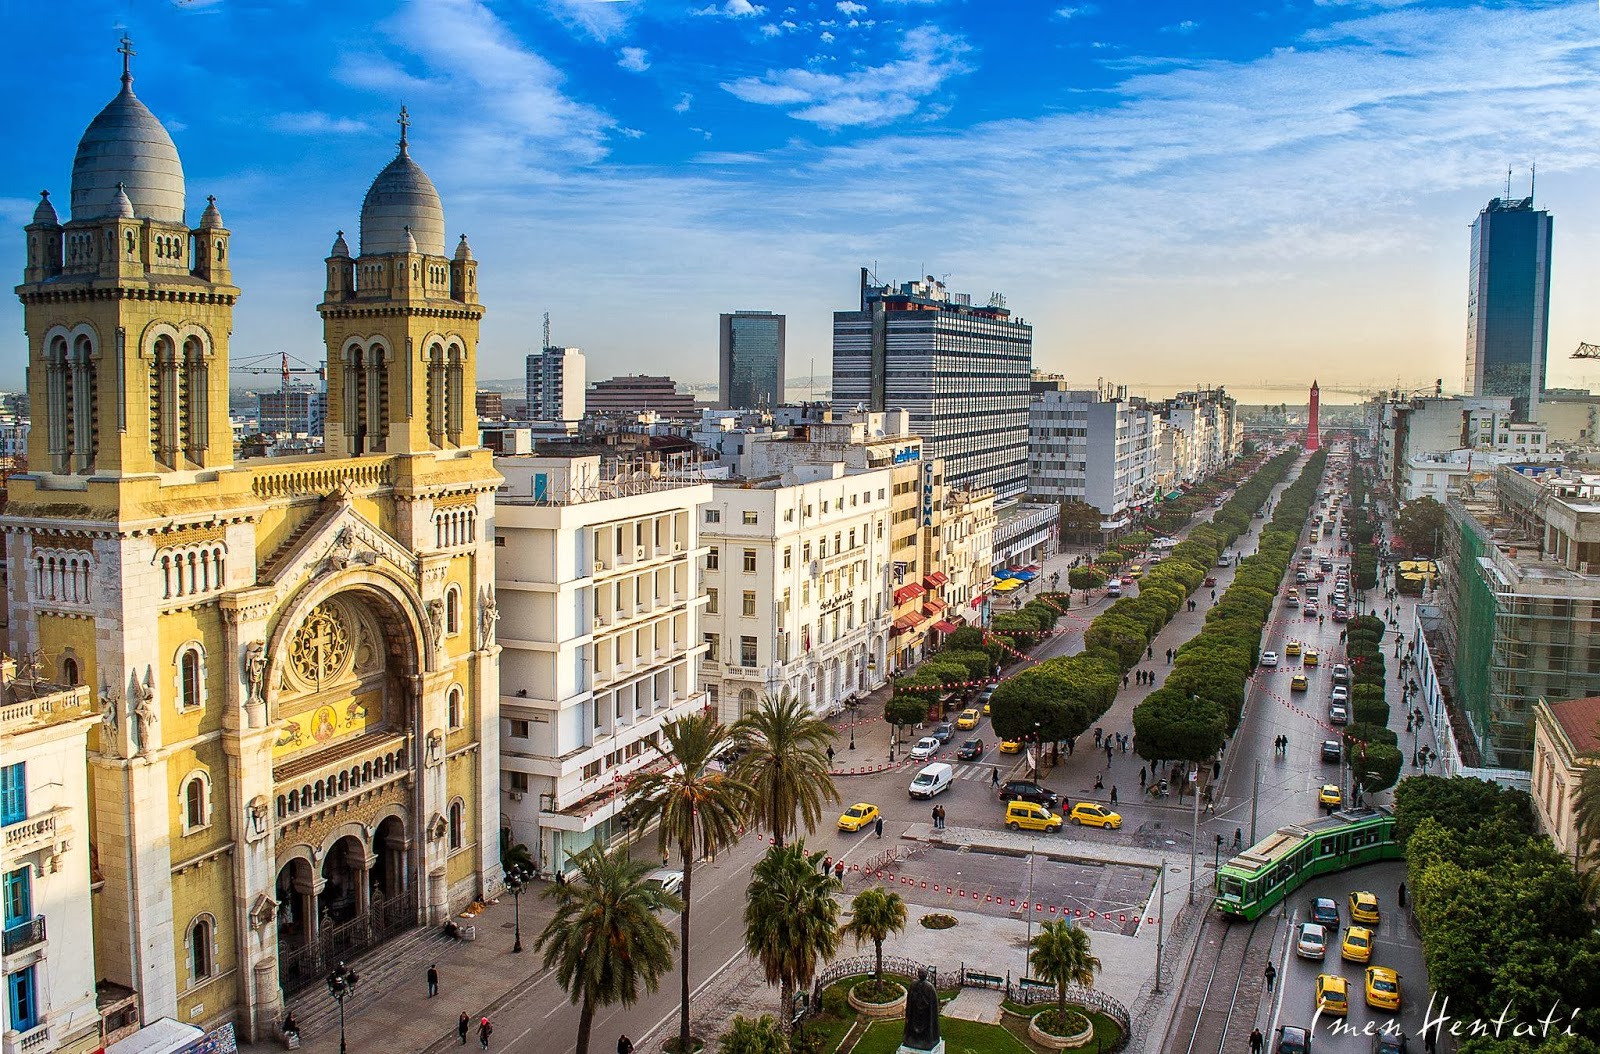 شاهراه مرکزی شهر تونس، و قلب سیاسی و اقتصادی تاریخی کشور است . این خیابان که نام خود را از اولین رئیس جمهور جمهوری ...